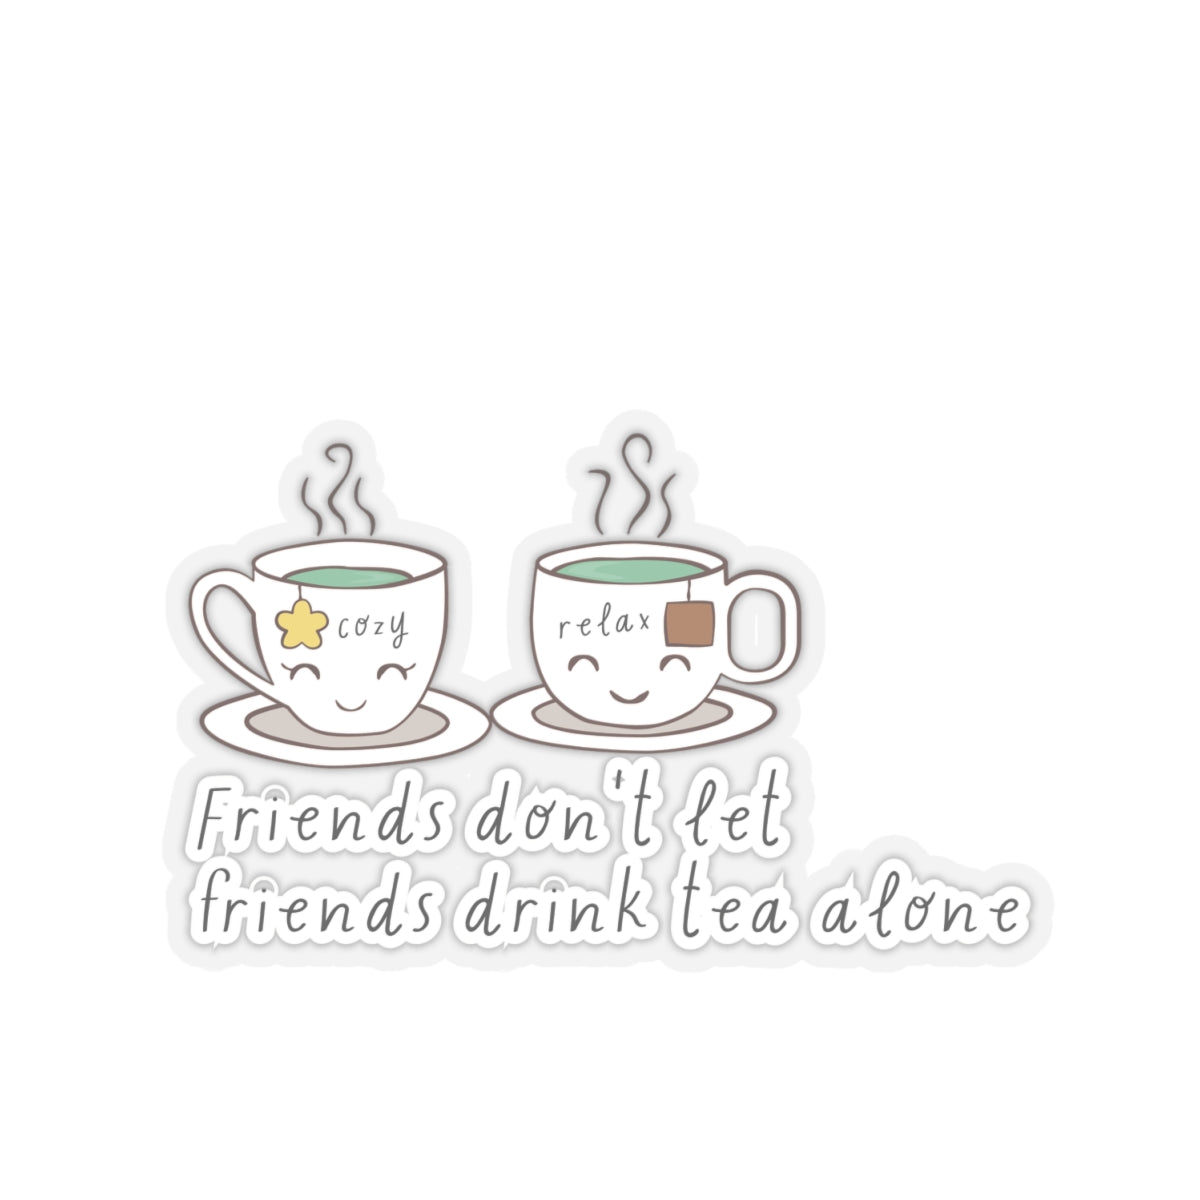 Friends Don't Let Friend Drink Tea Alone Kiss-Cut Stickers-Paper products-4" × 4"-Transparent-mysticalcherry